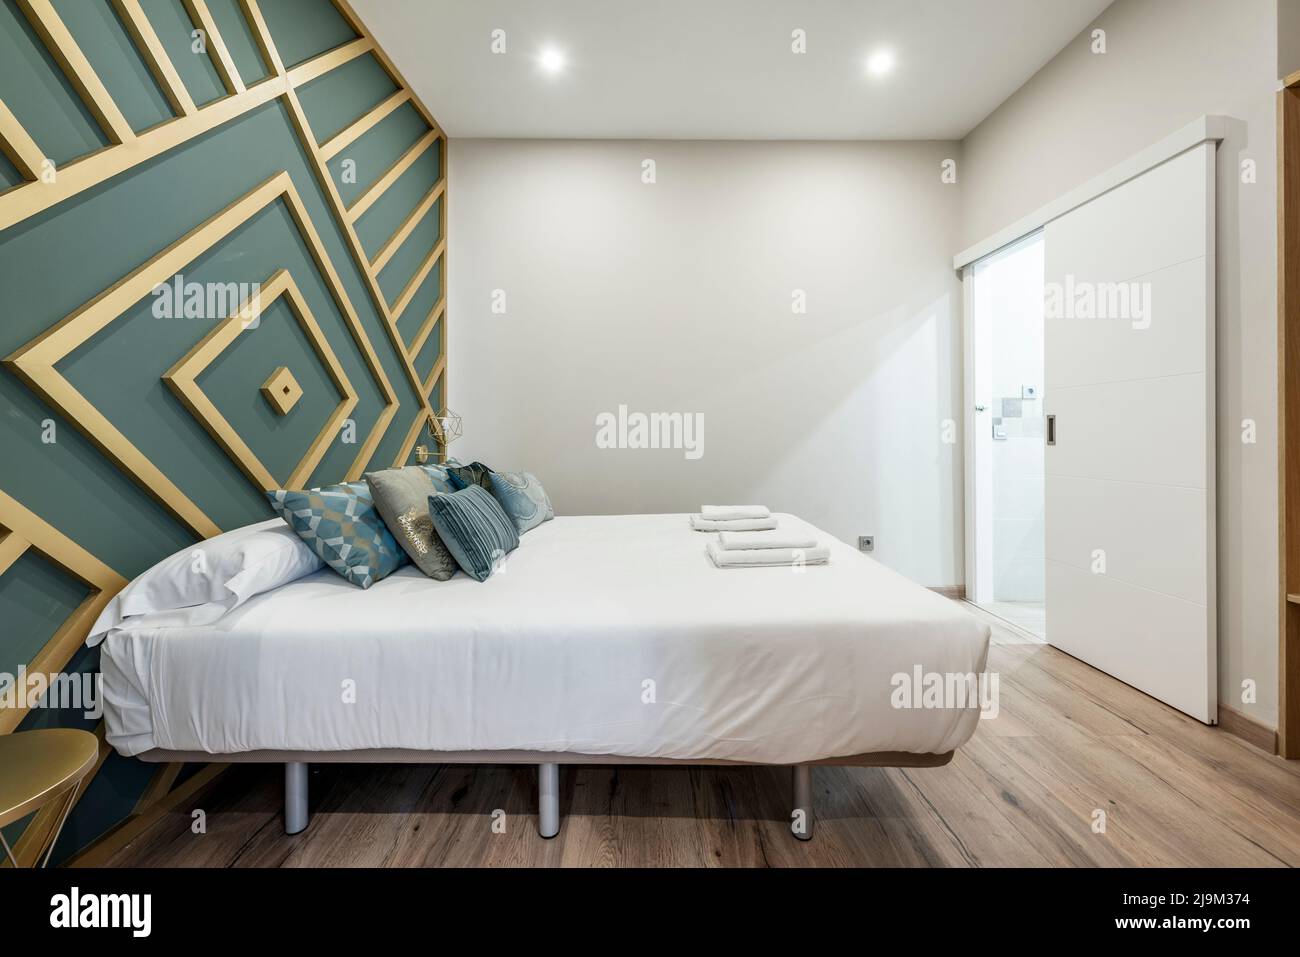 Schlafzimmer mit Doppelbett mit Polsterung, Kopfteil mit goldlackiertem  Holz und grüner Wand Stockfotografie - Alamy